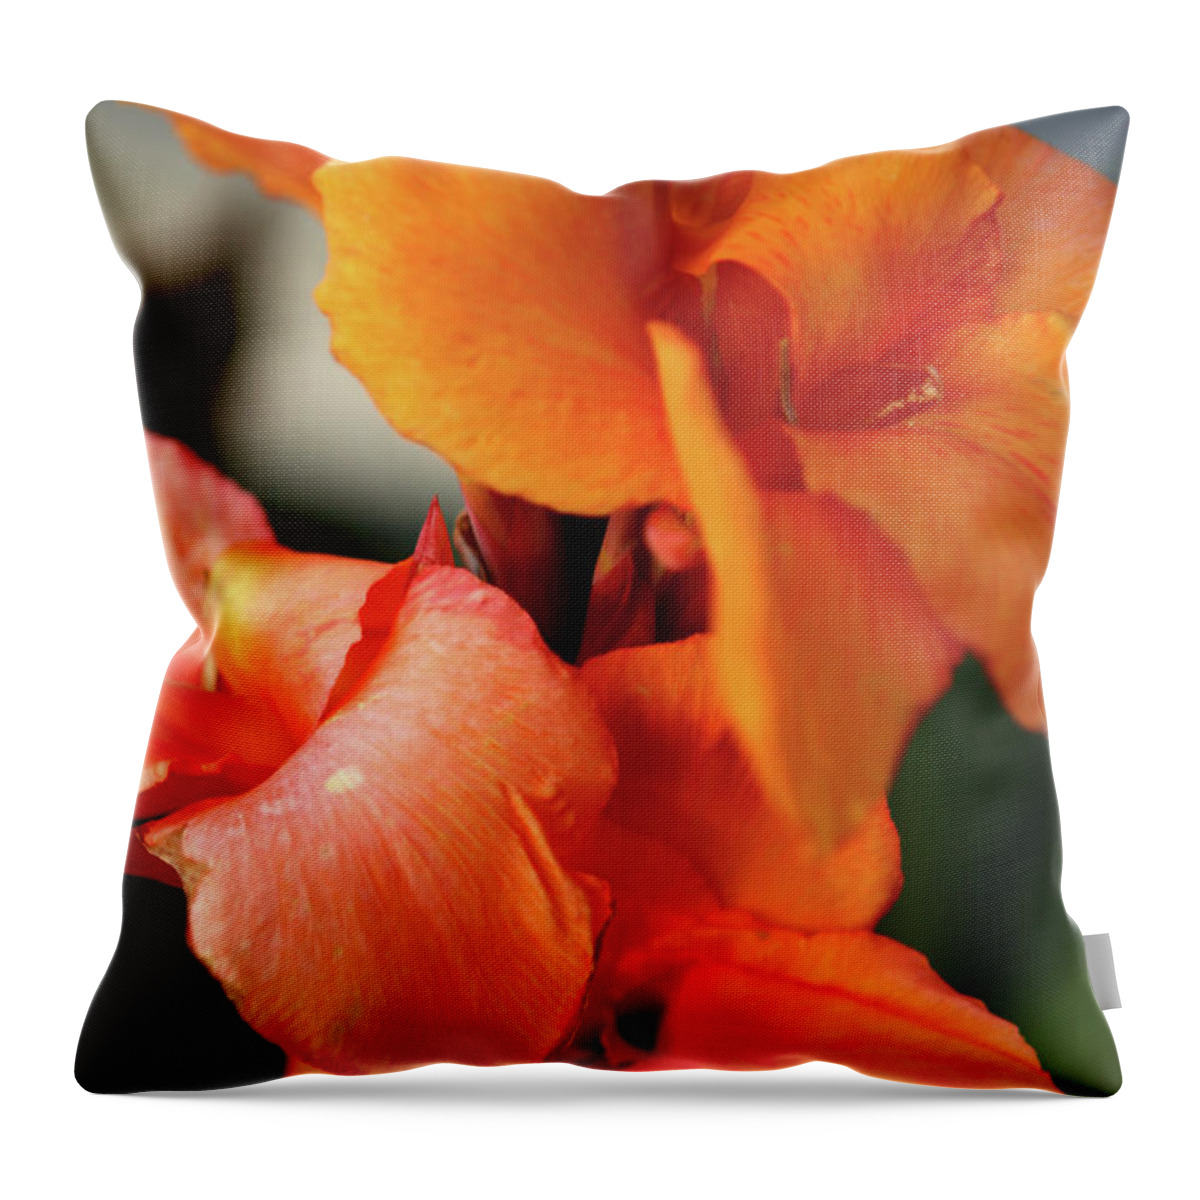 Orange Flower Throw Pillow featuring the photograph Big Orange Flower by Lorraine Devon Wilke